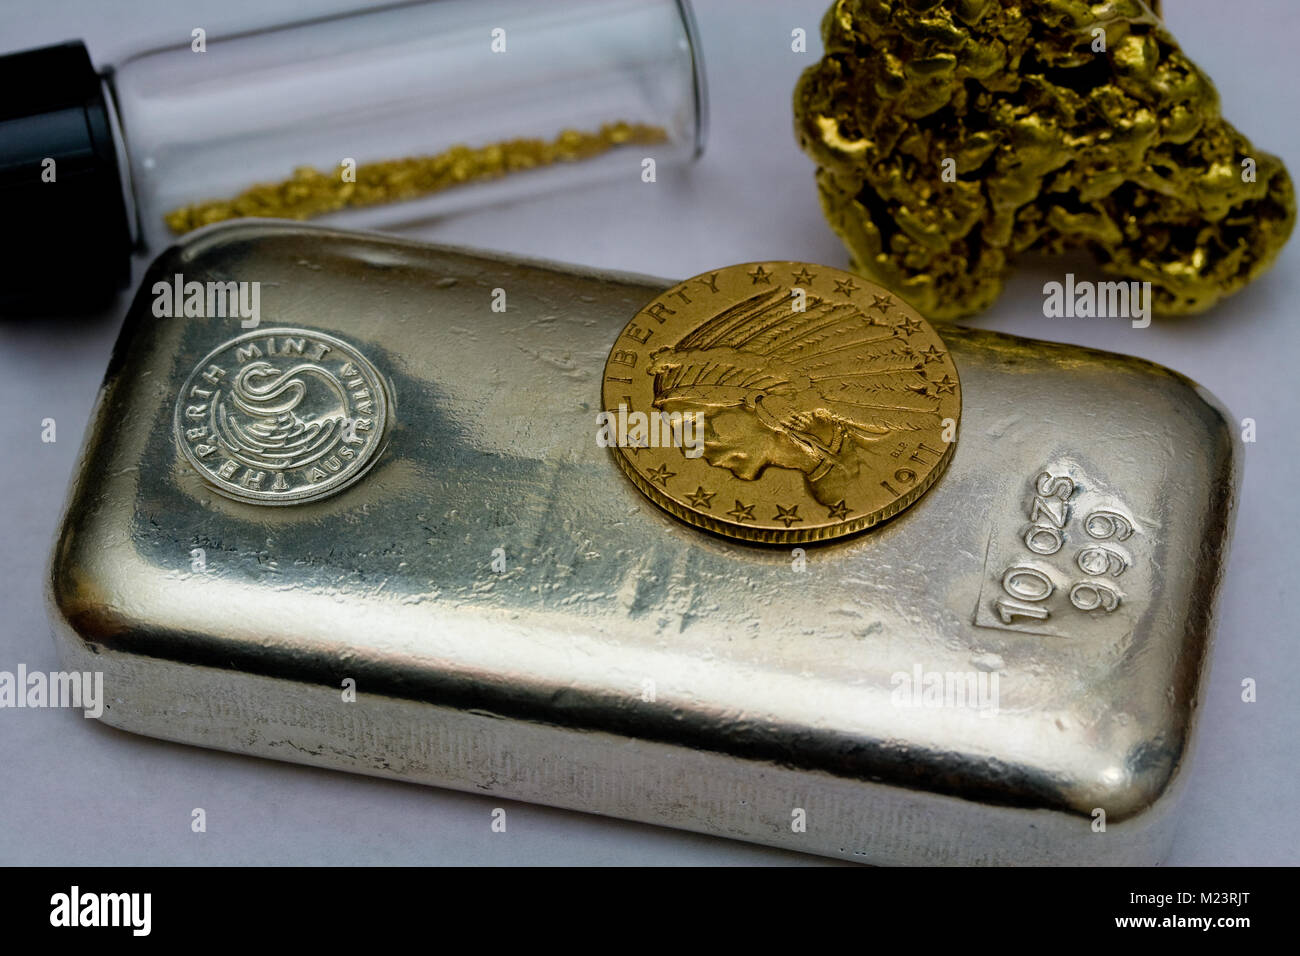 10 onzas de plata Bar, 1911 Gold $5 moneda india y materias pepitas de oro Foto de stock